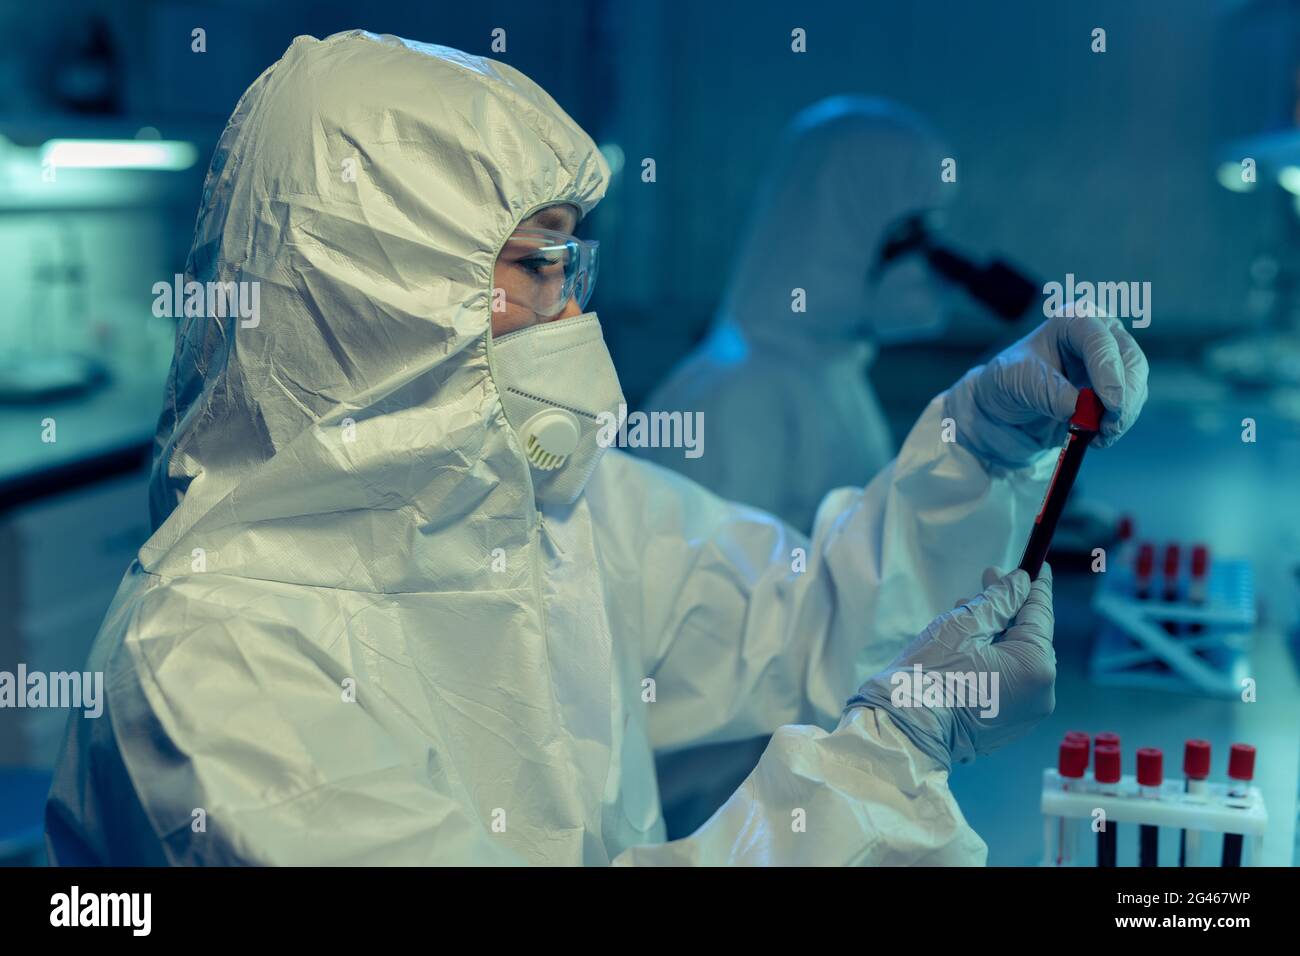 Wissenschaftler oder Chemiker in Overalls, die Staubsauger mit Biomaterial halten Stockfoto